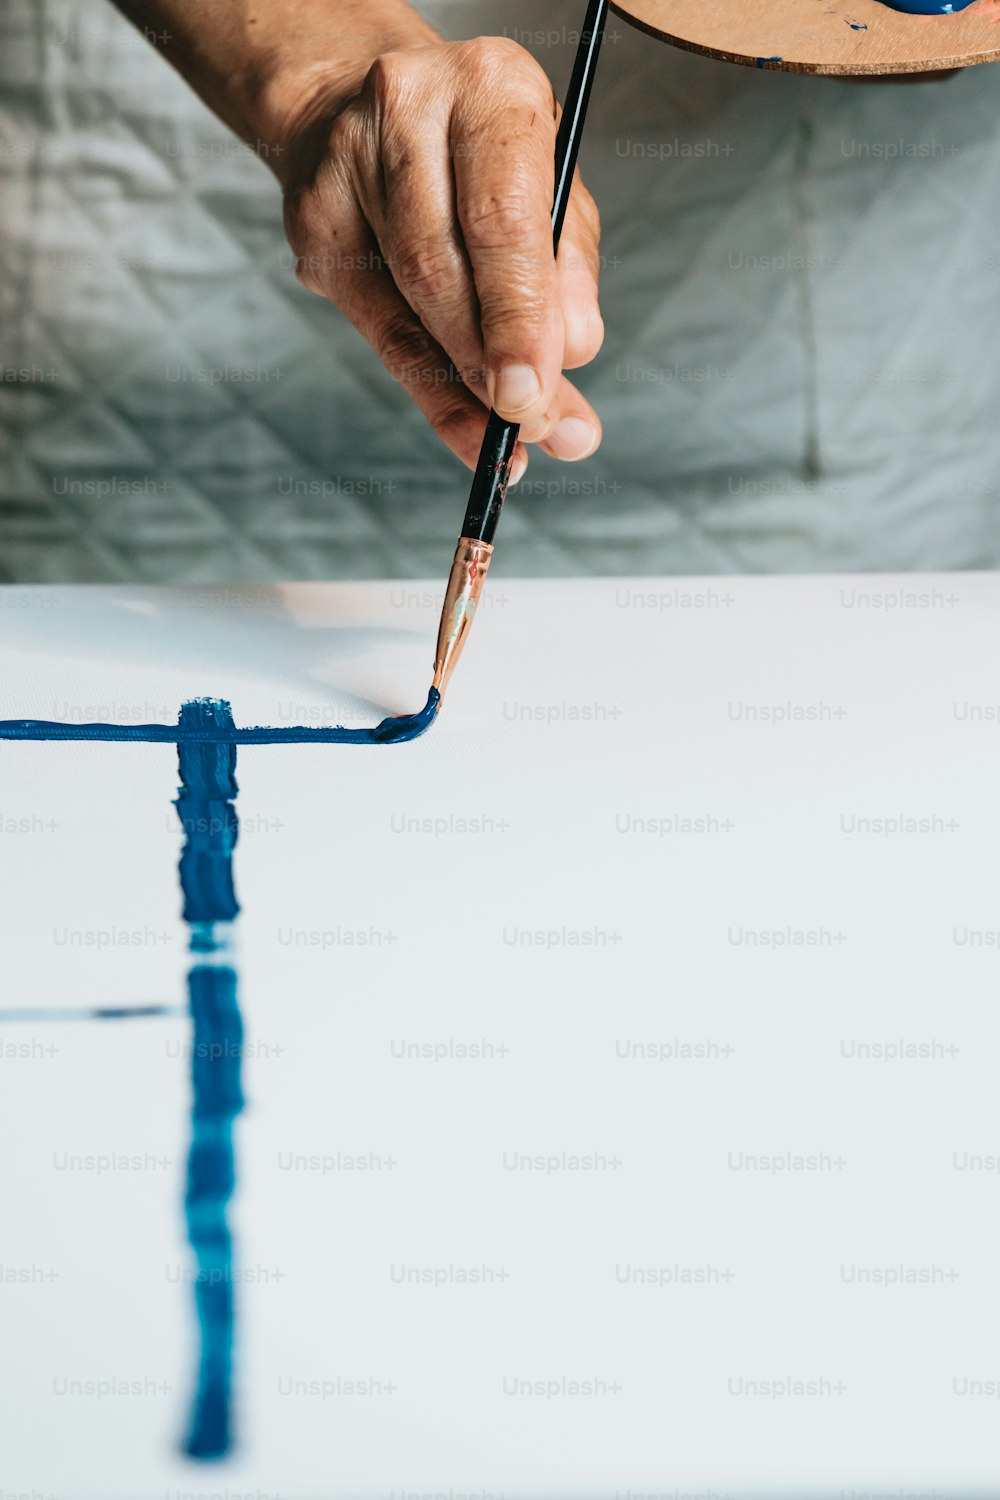 una persona sosteniendo un pincel y pintando un pedazo de papel